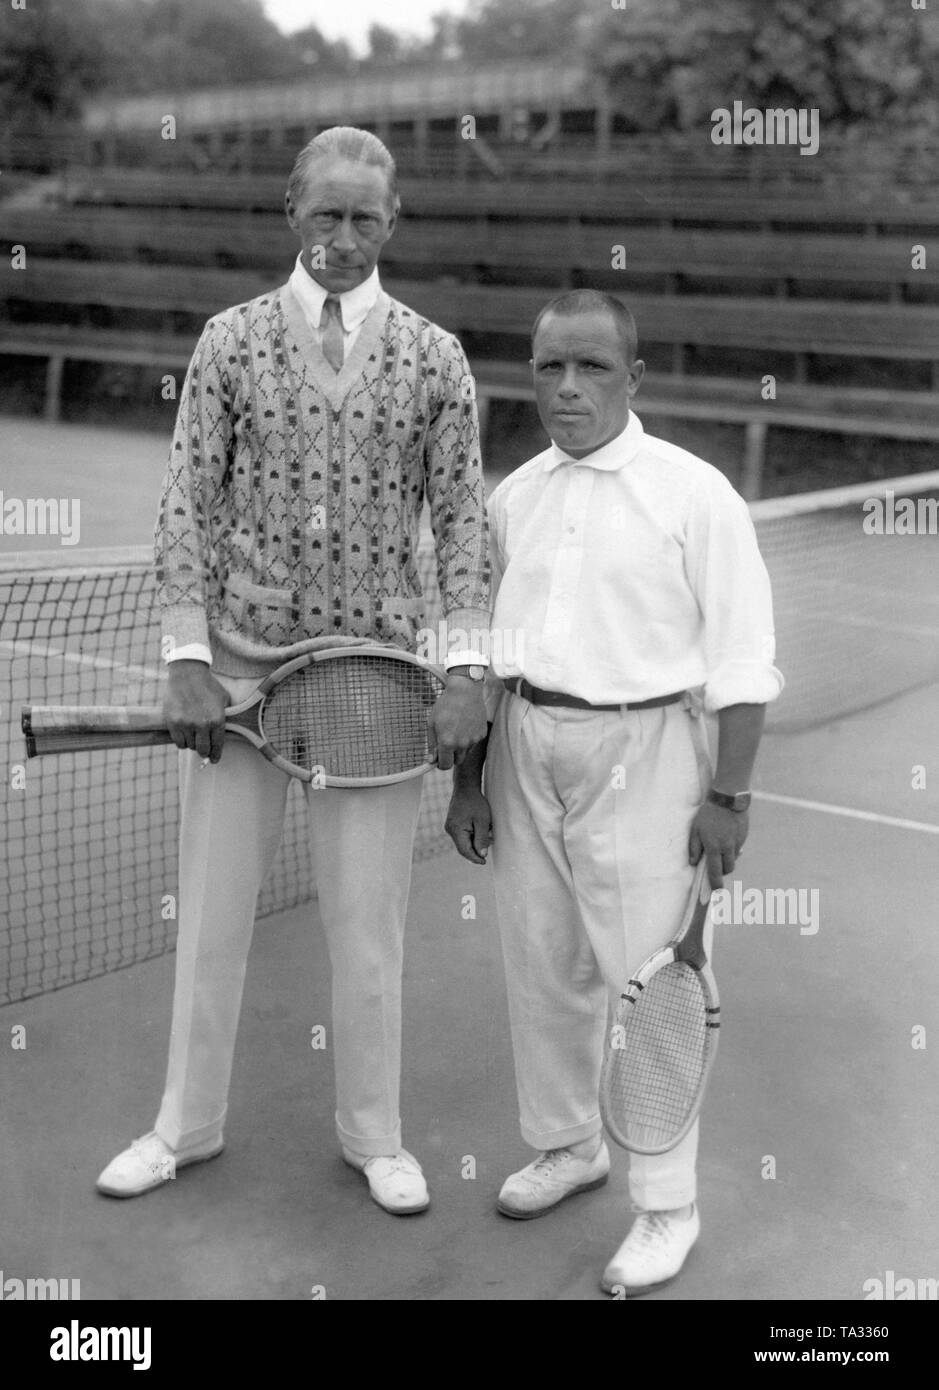 Der Kronprinz (links) und sein Trainer Richter (rechts) auf einem Tennisplatz. Stockfoto